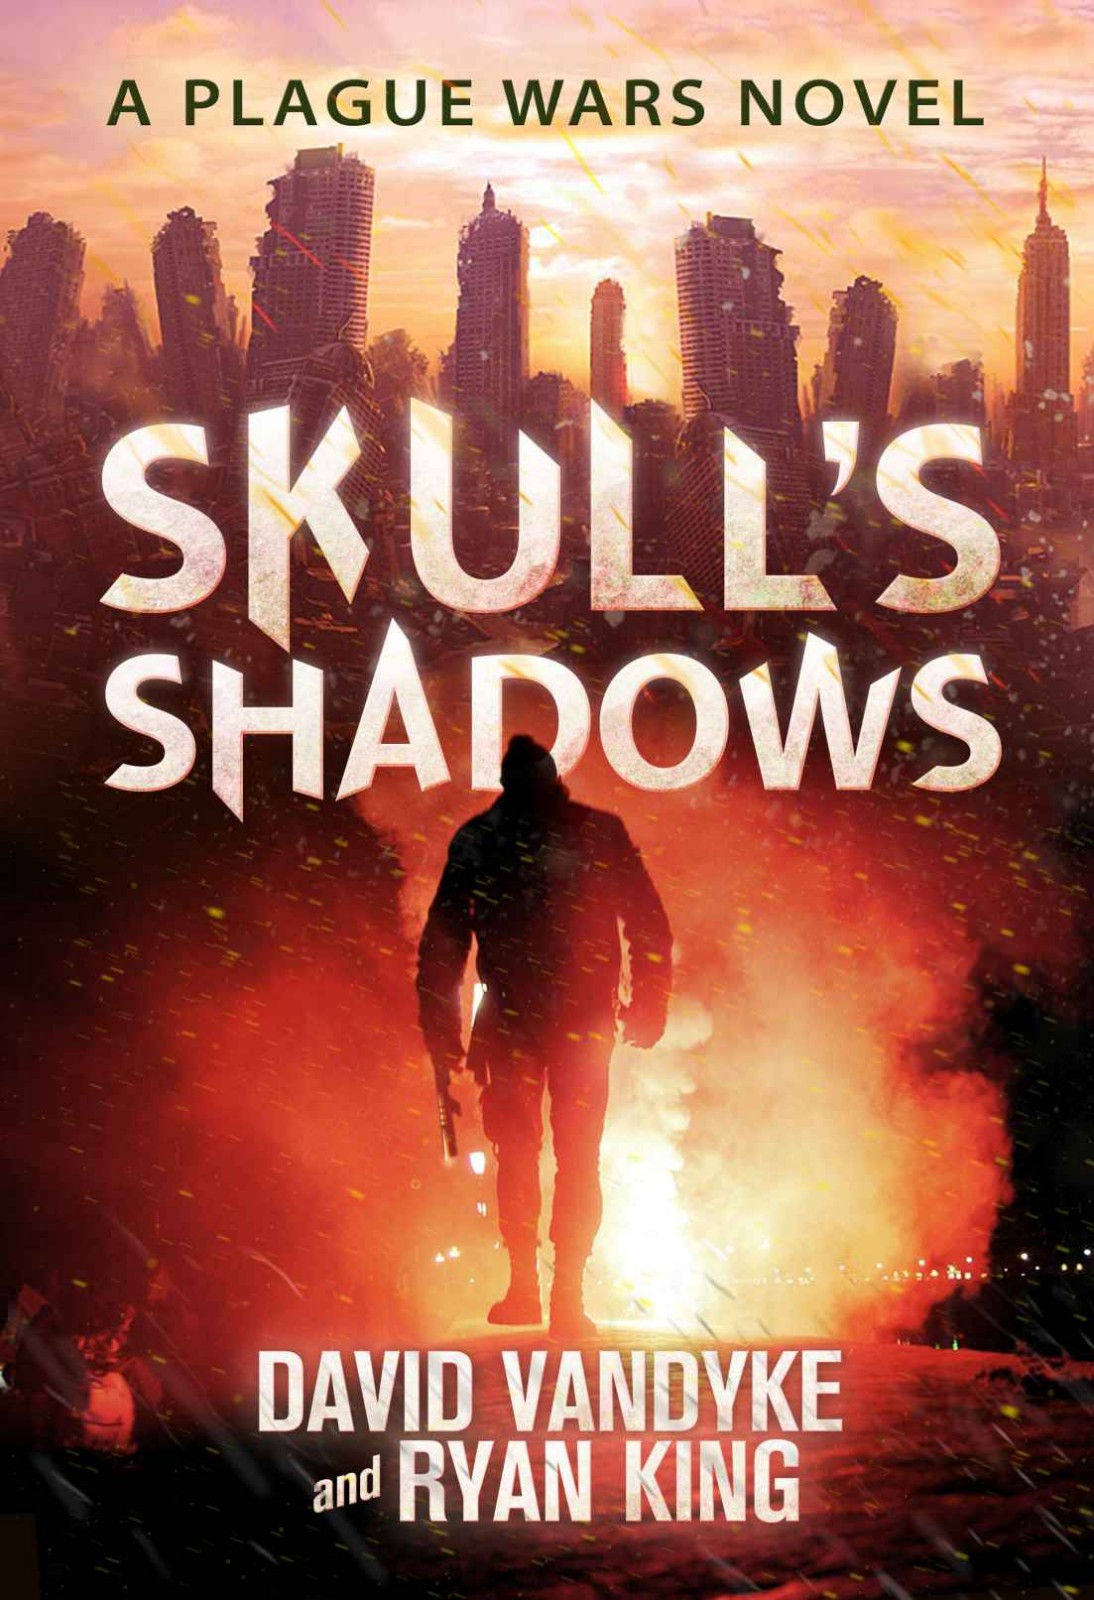 Skull's Shadows